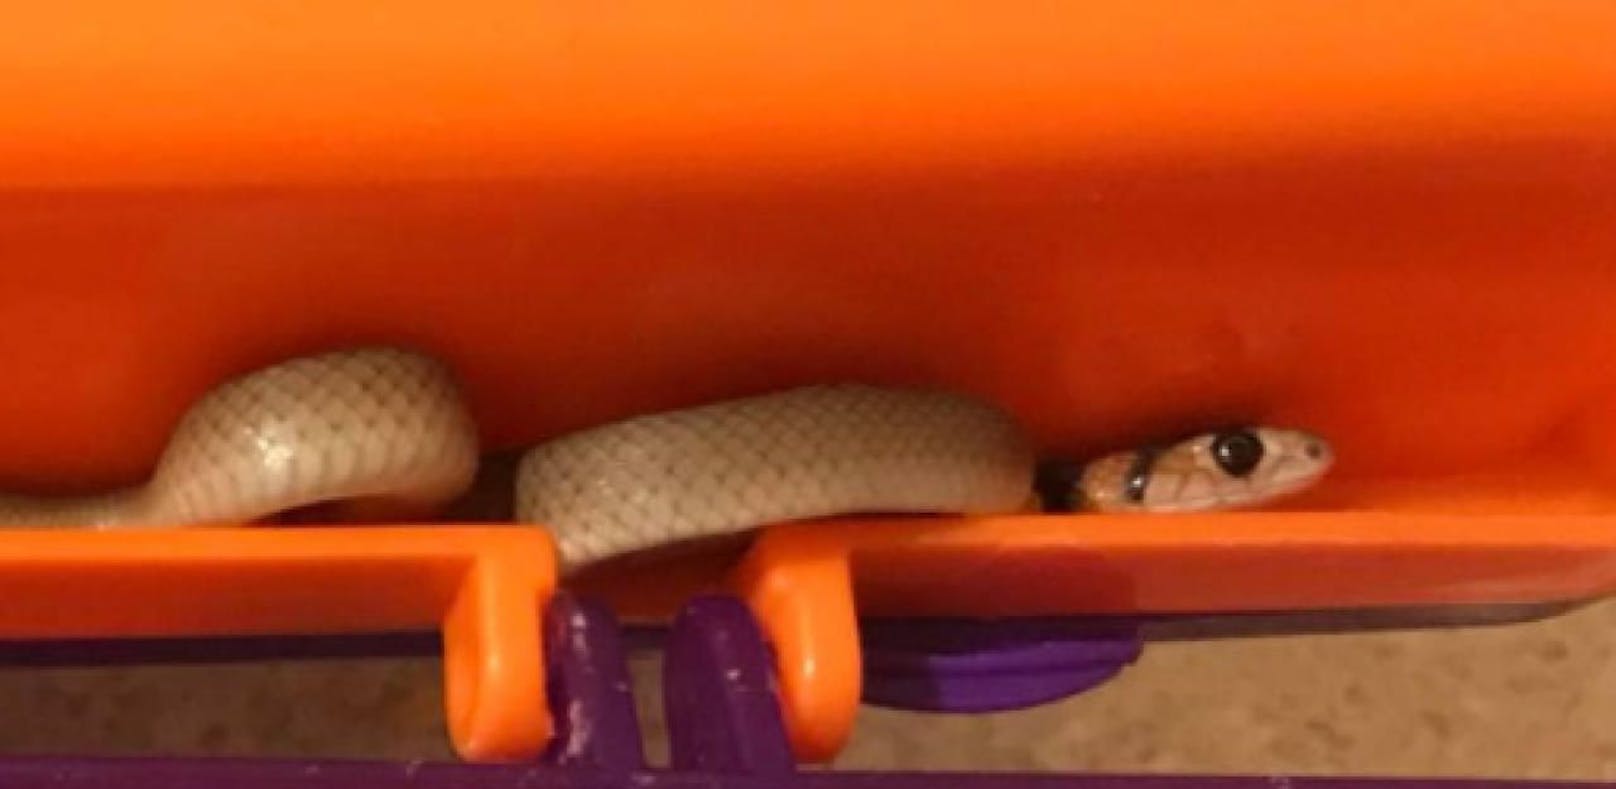 Mini-Giftschlange in Jausenbox gefunden